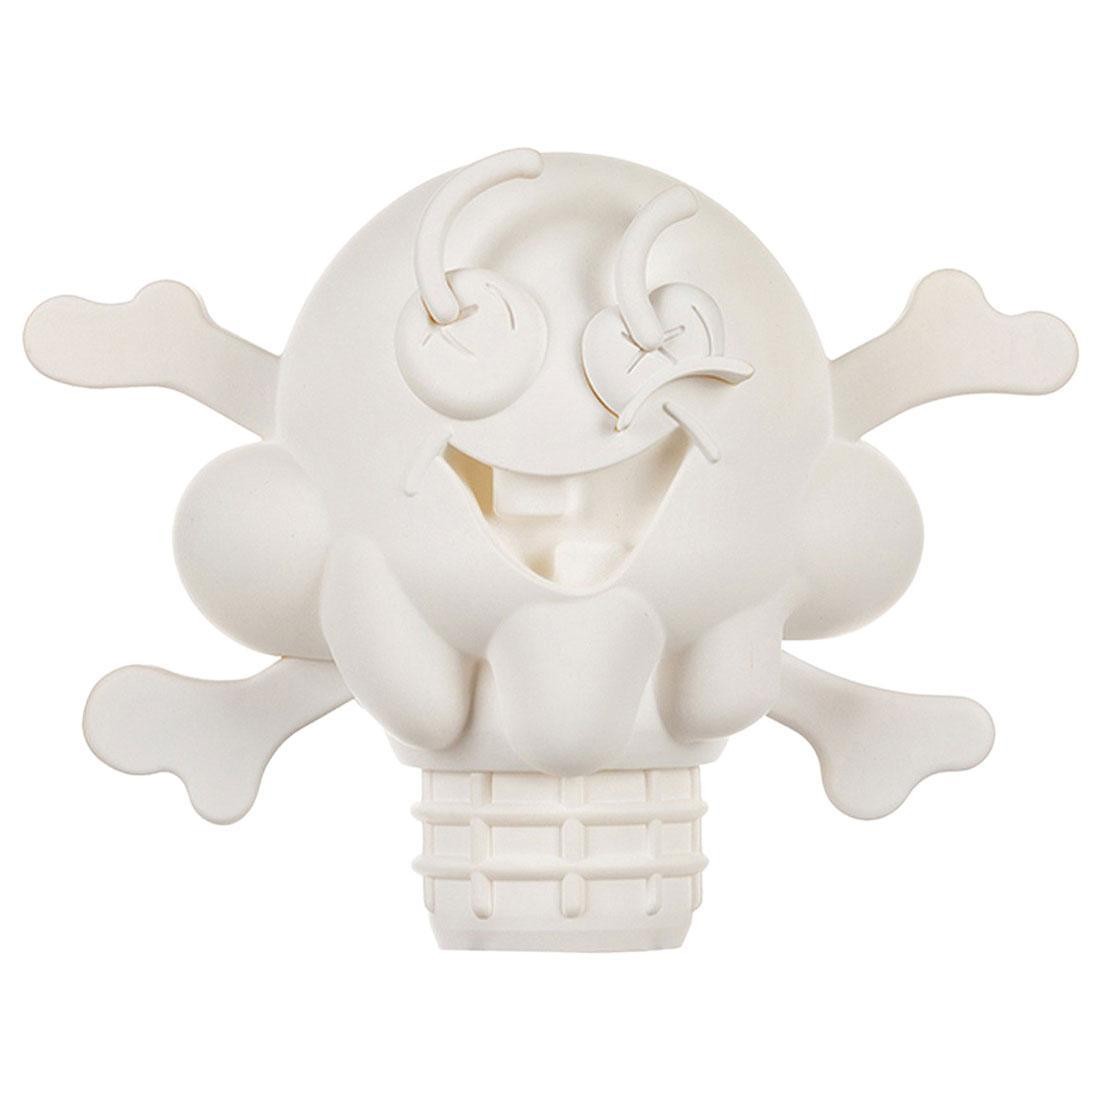 Ice Cream Cones and Bones Figurine (white)